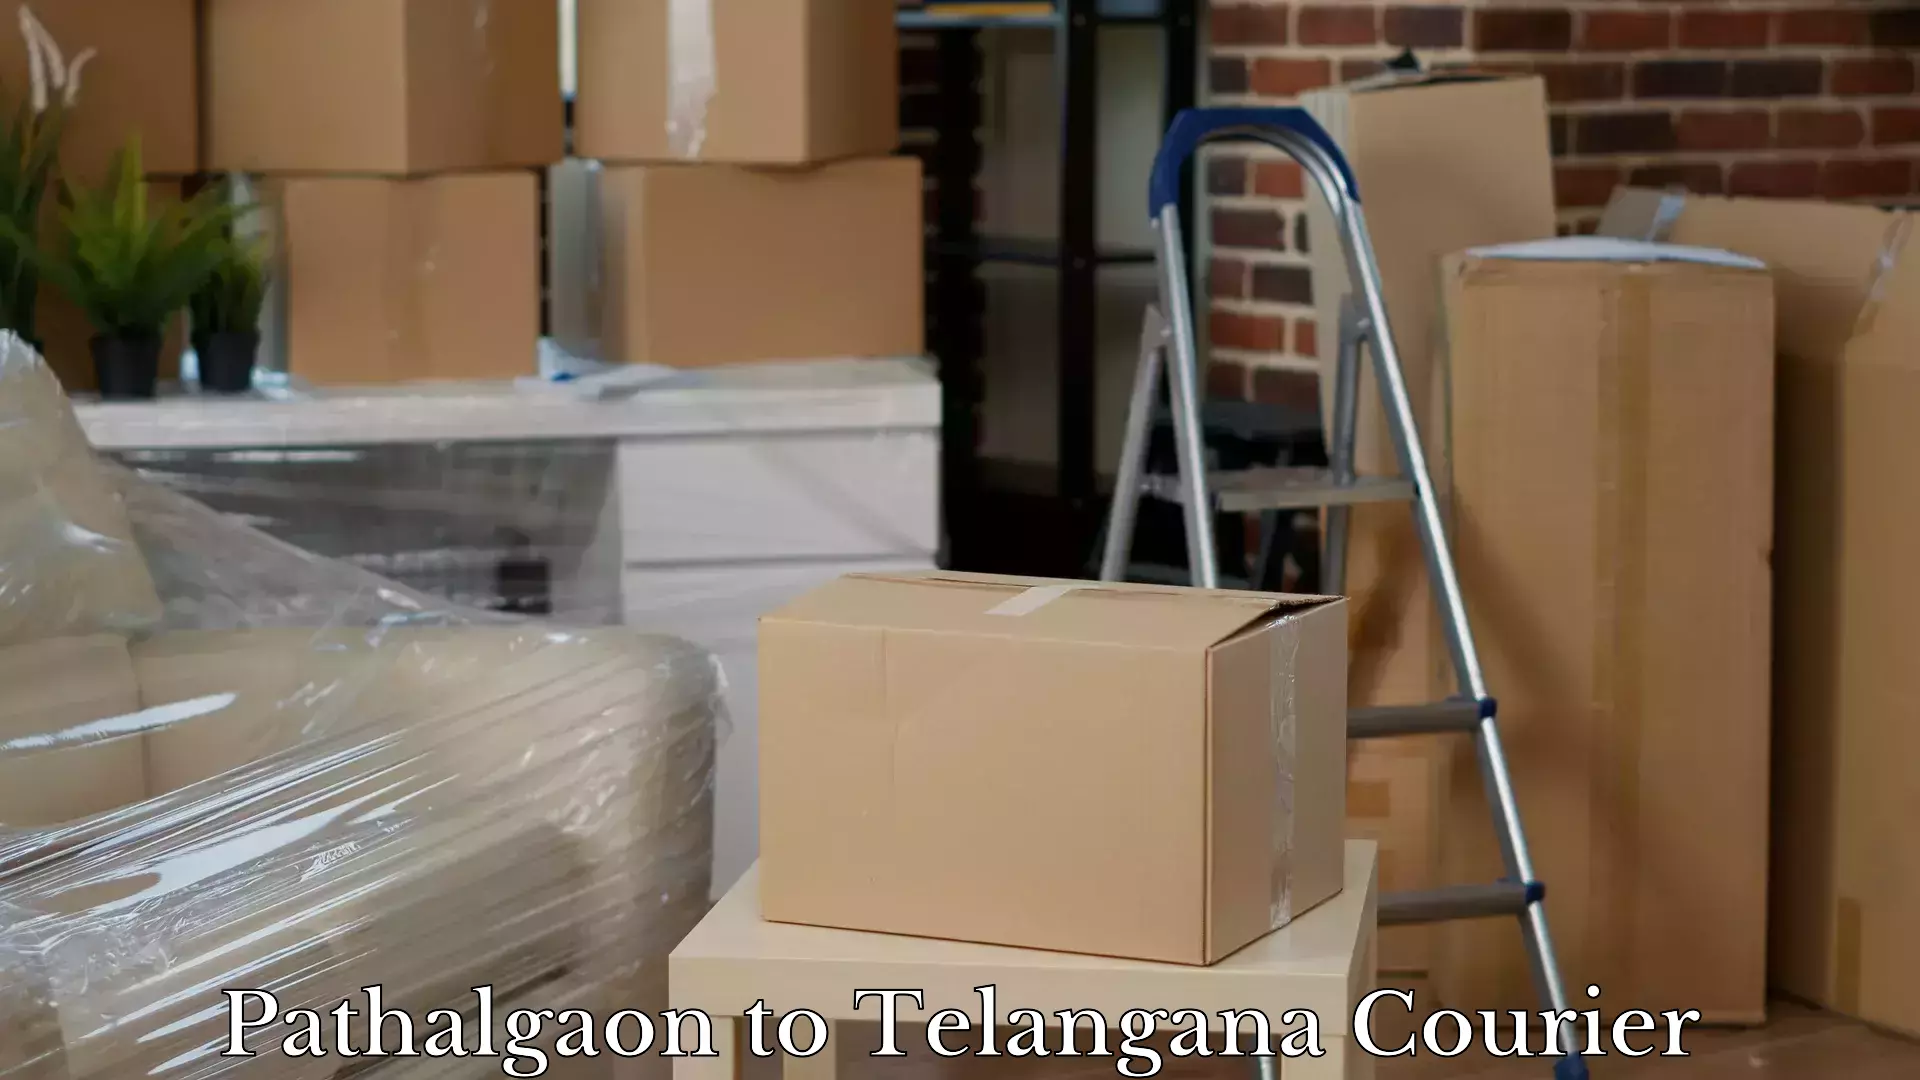 Luggage shipment specialists Pathalgaon to Telangana